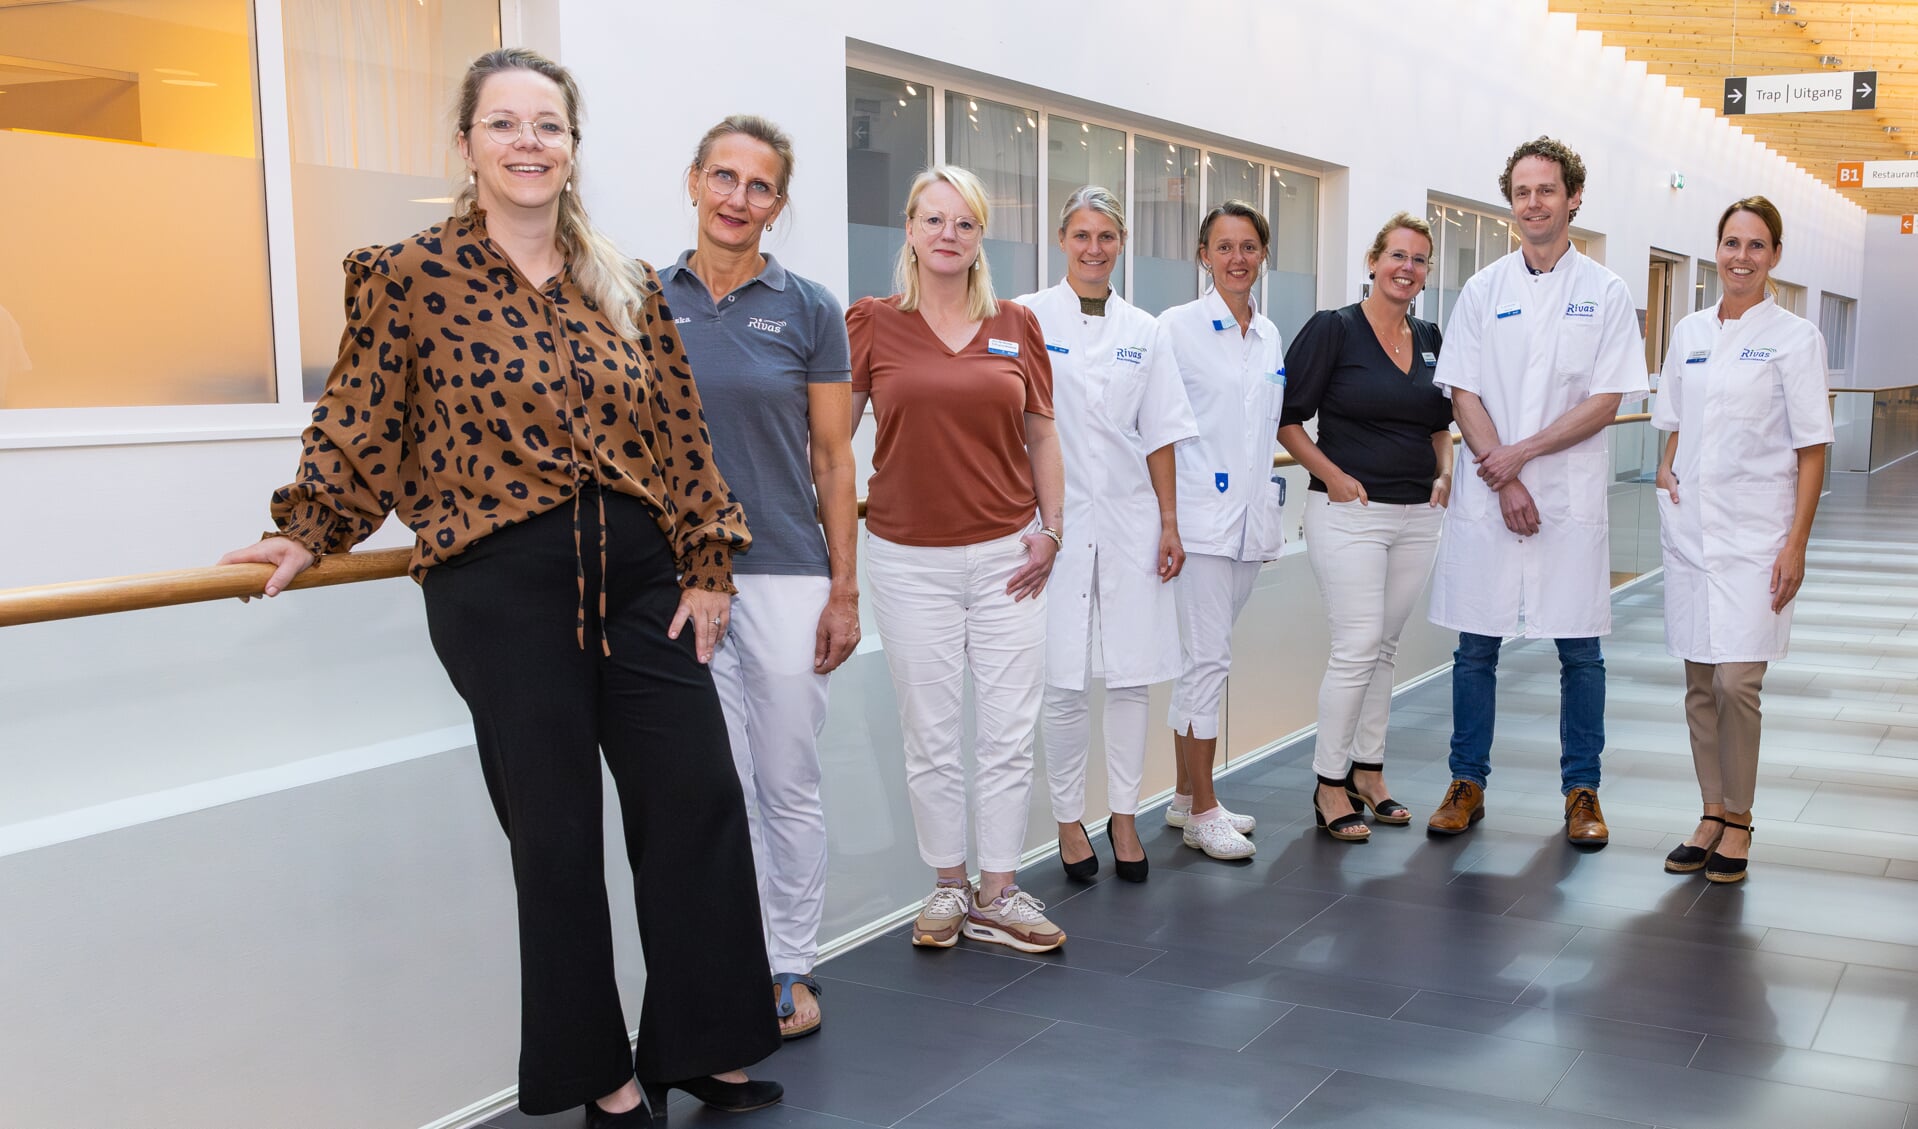 • Op de foto v.l.n.r.: Janneke Tukker-Swijnenburg (programmamanager oncologie en palliatieve zorg), Mariska Froeling (fysiotherapeut), Jet Hellema (psycholoog), Suzanne Last-Koopmans (hematoloog), Marieke de Groot-Bakker (oncologieverpleegkundige), Ingeborg Pos-van der Horst (verpleegkundig consulent Oncologie), Aram van Brussel (oncoloog), Sandra den Besten-van Herk (verpleegkundig specialist). Niet op de foto, wel in het AYA-team: Ben Oosterom (geestelijk verzorger).